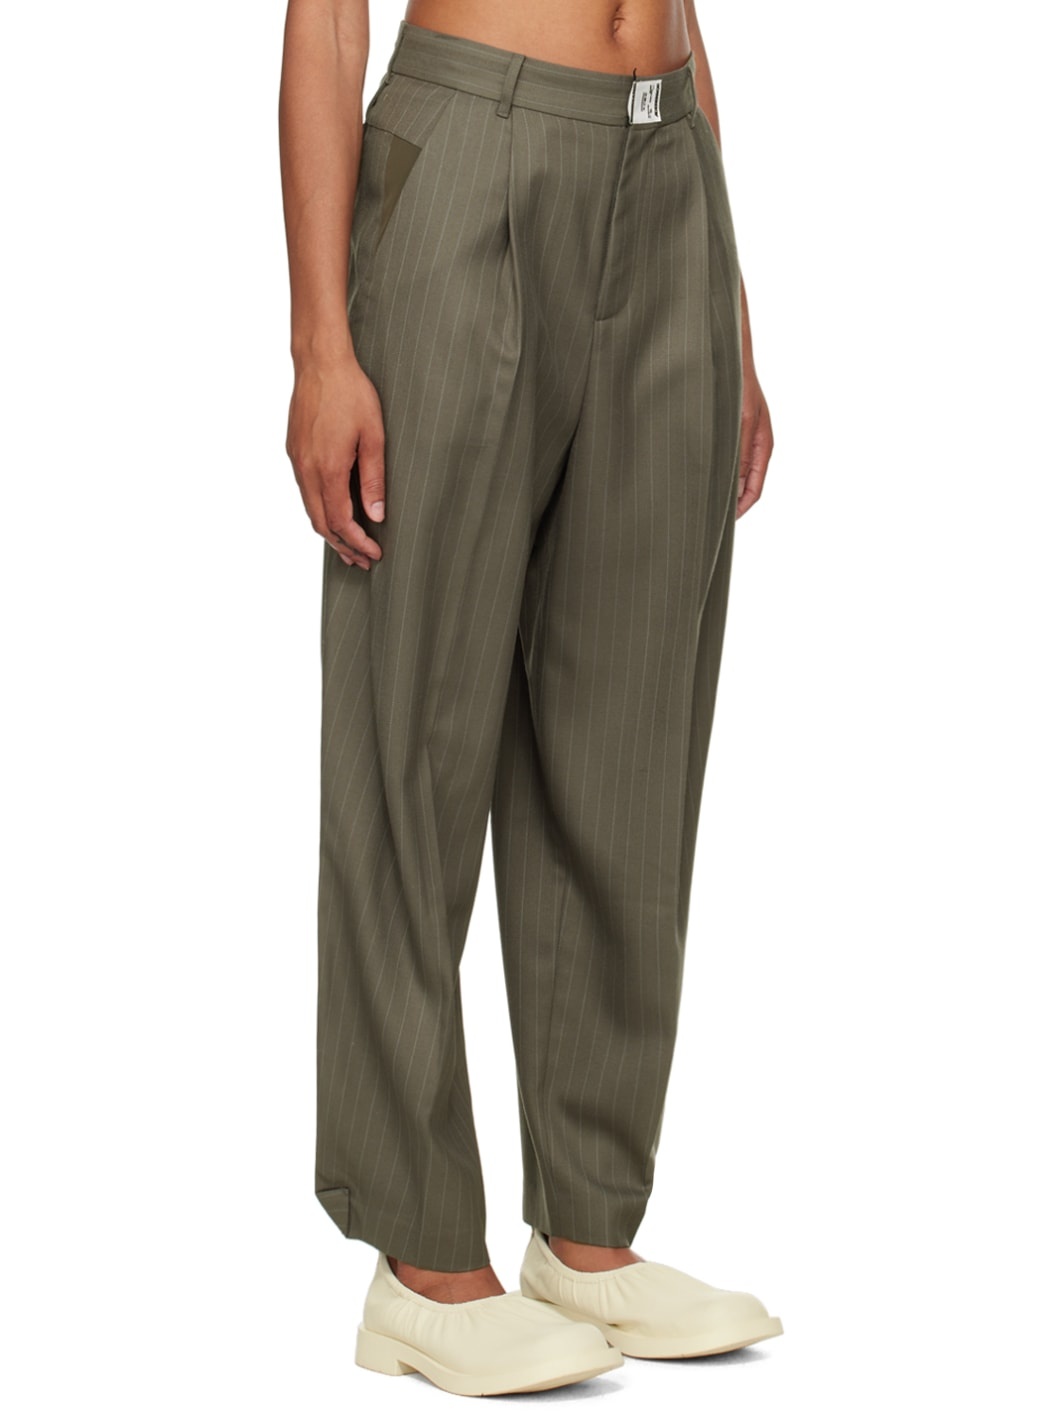 Gray Lawren Trousers - 2